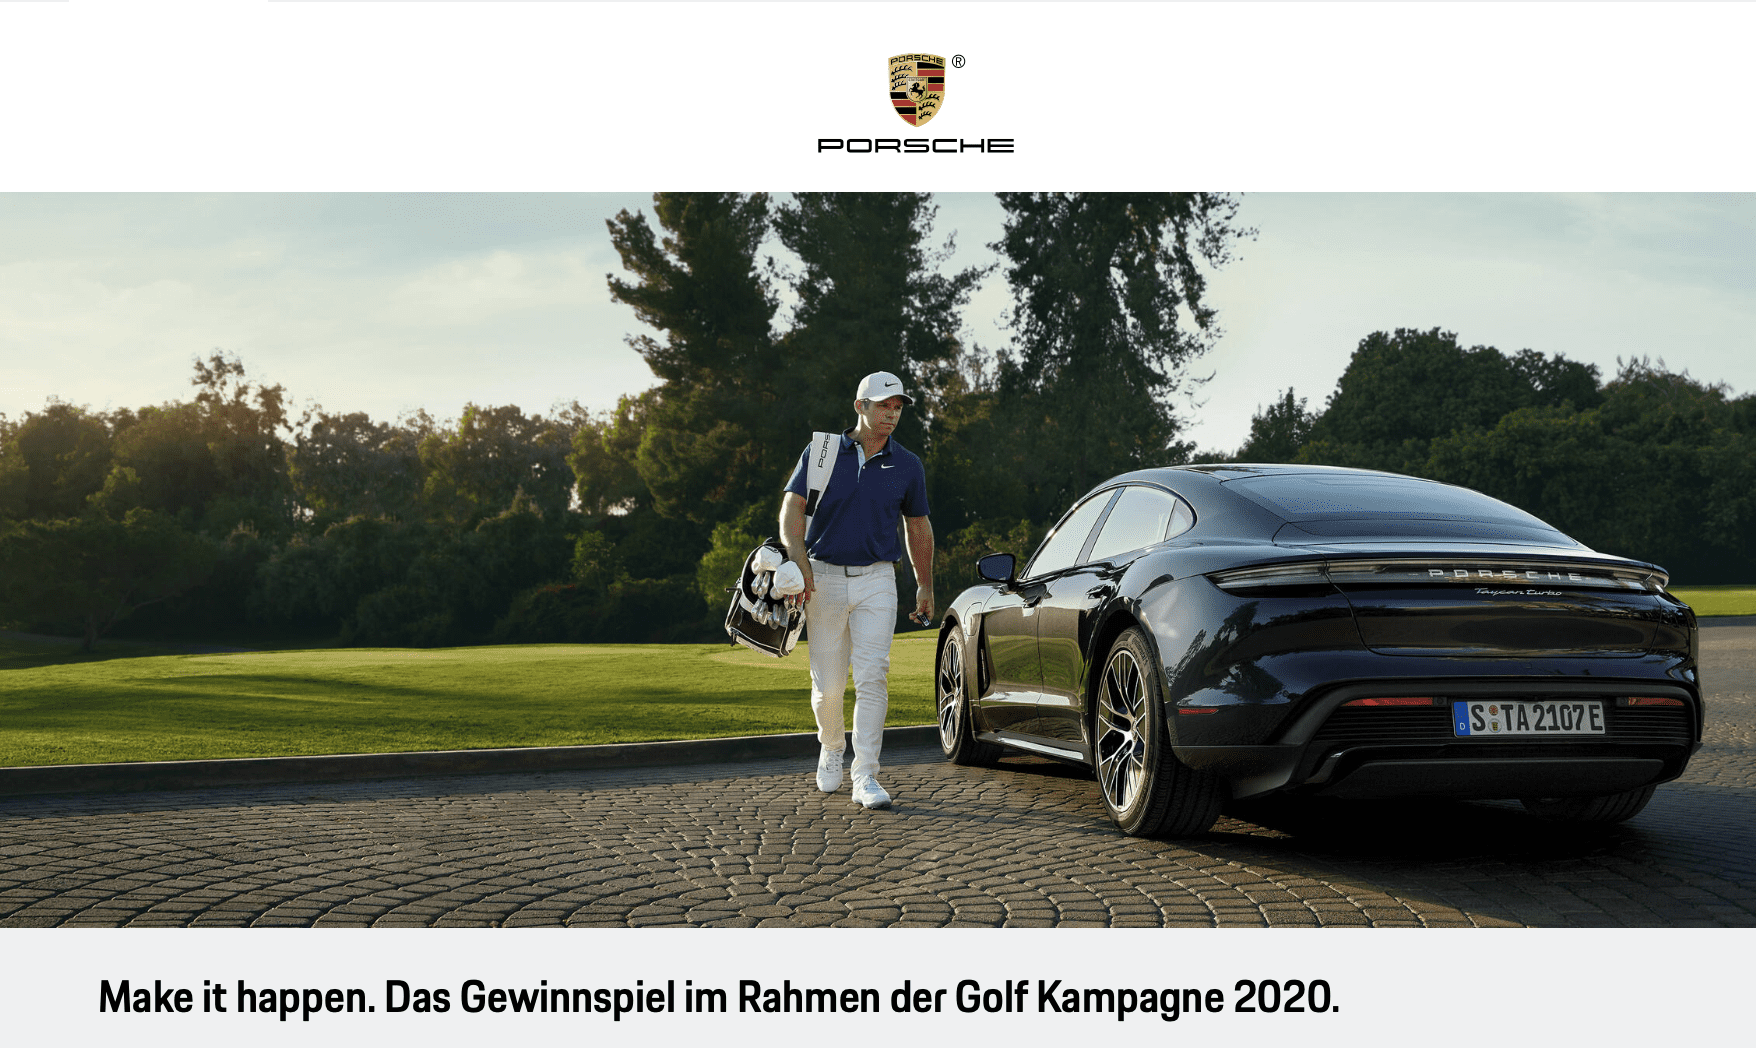 Das Gewinnspiel zur Porsche Golf Kampagne 2020